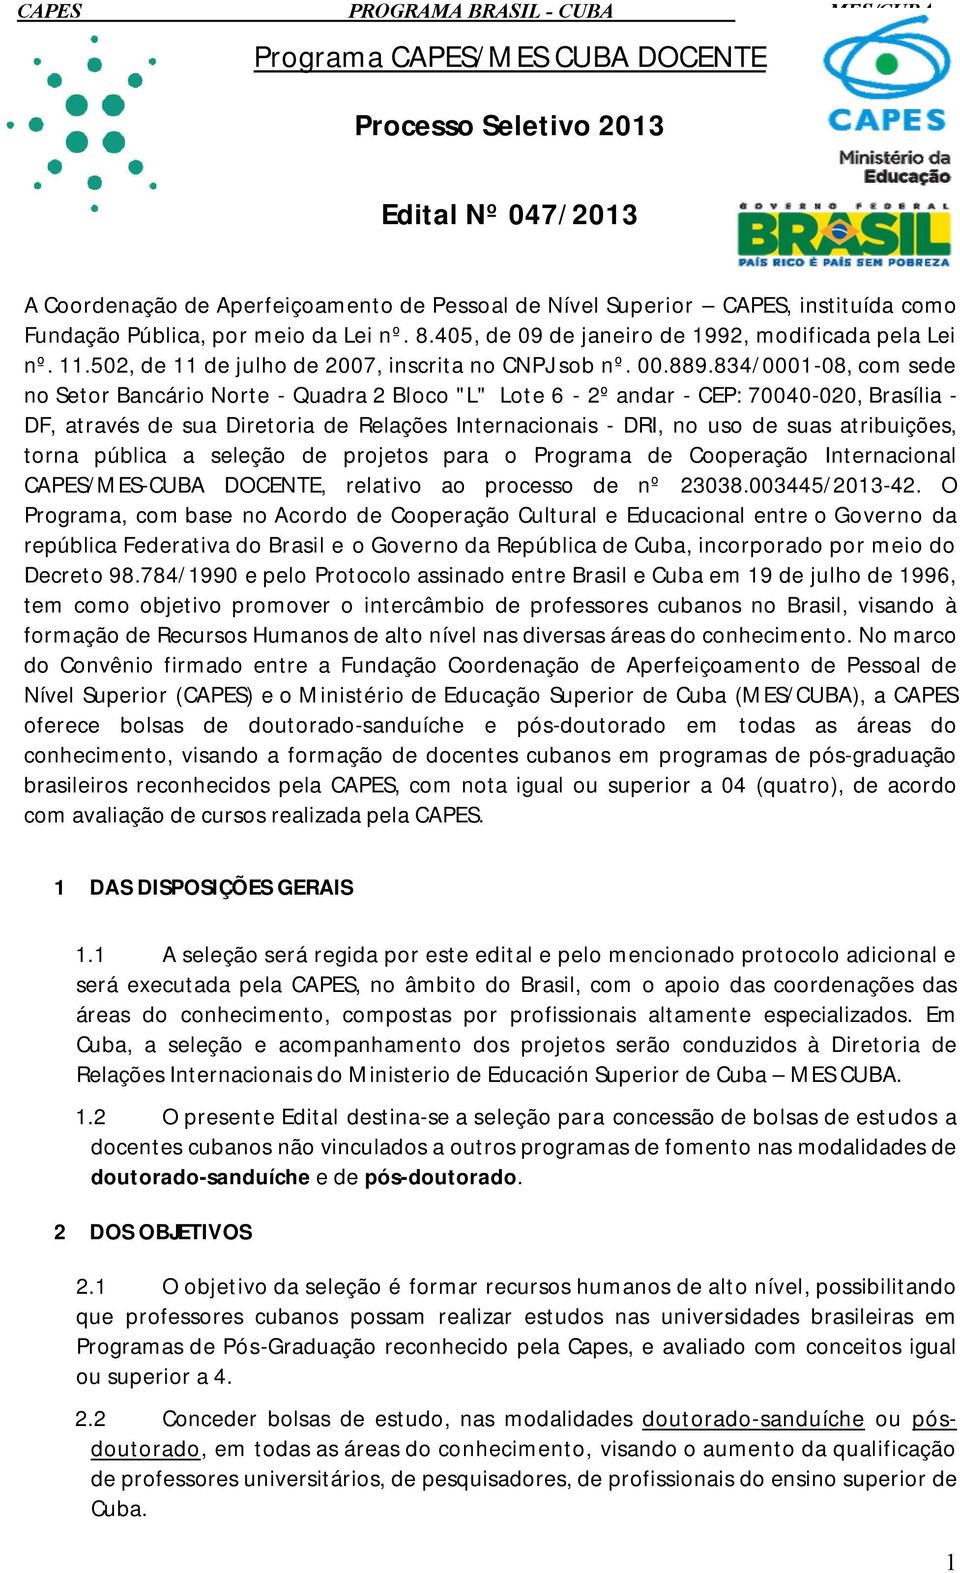 834/0001-08, com sede no Setor Bancário Norte - Quadra 2 Bloco "L" Lote 6-2º andar - CEP: 70040-020, Brasília - DF, através de sua Diretoria de Relações Internacionais - DRI, no uso de suas